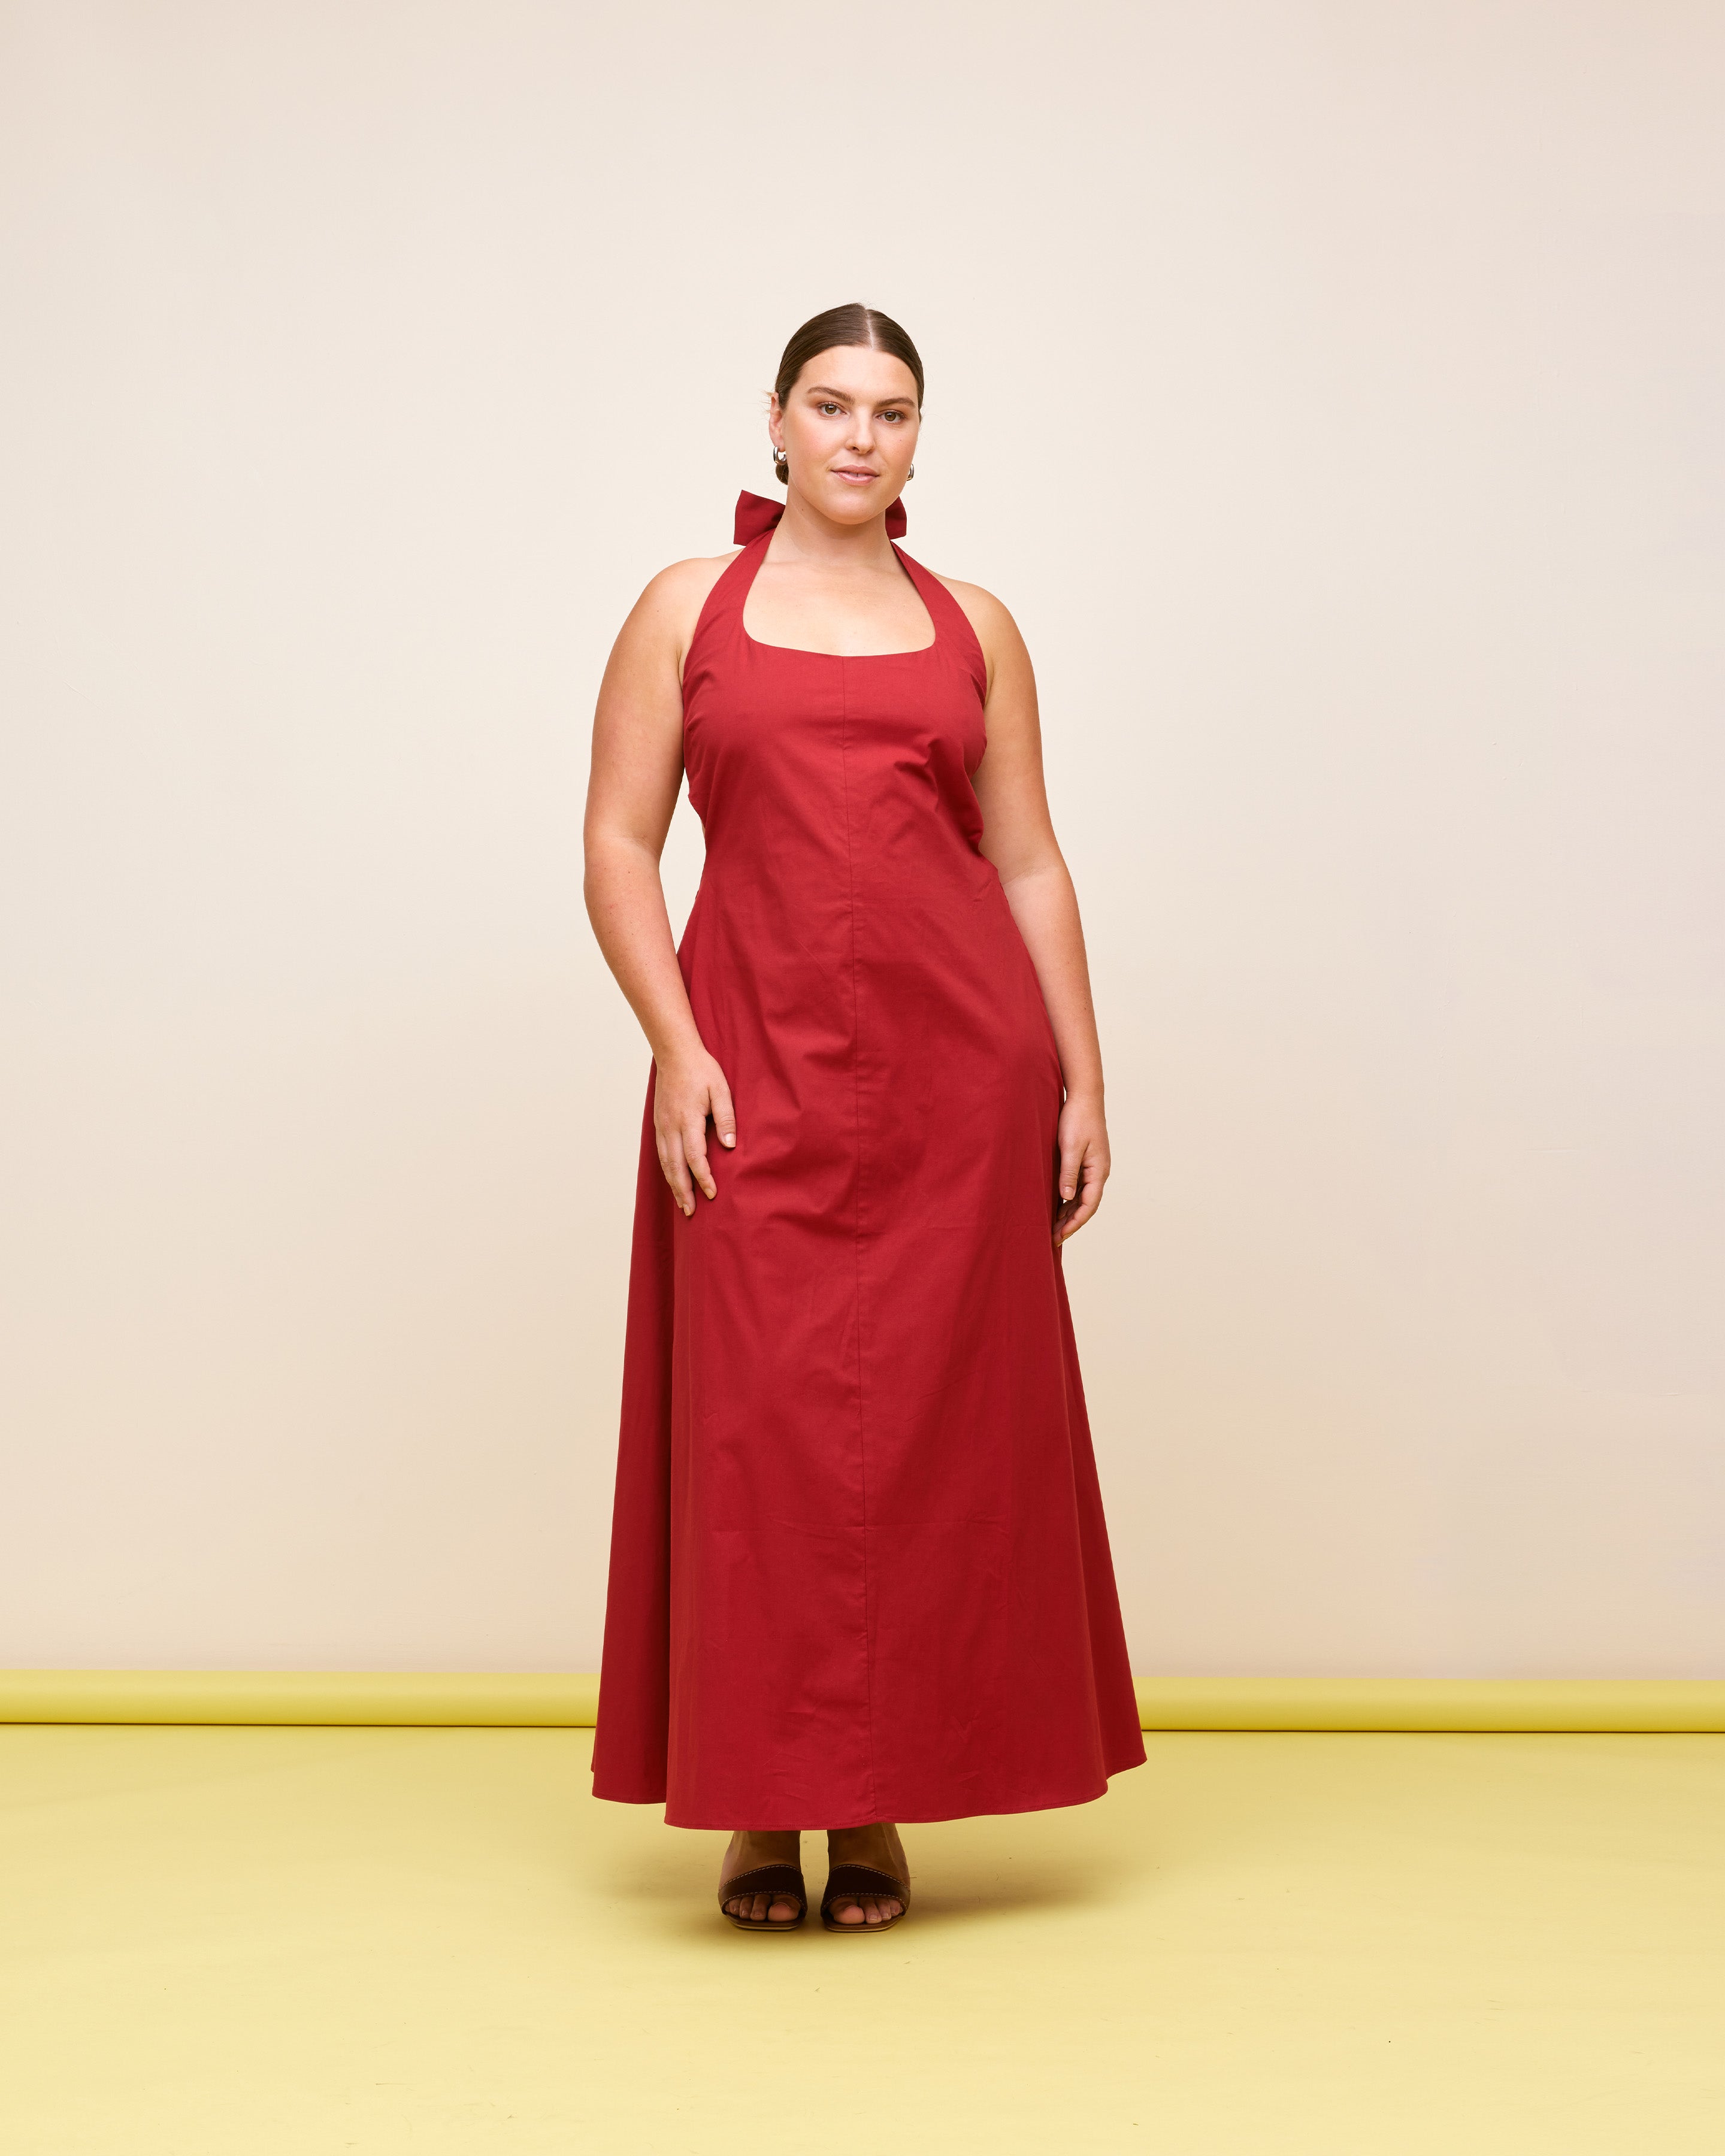 Plus Size Evening Dresses Online | Cheap Plus Size Formal Dresses - UCenter  Dress